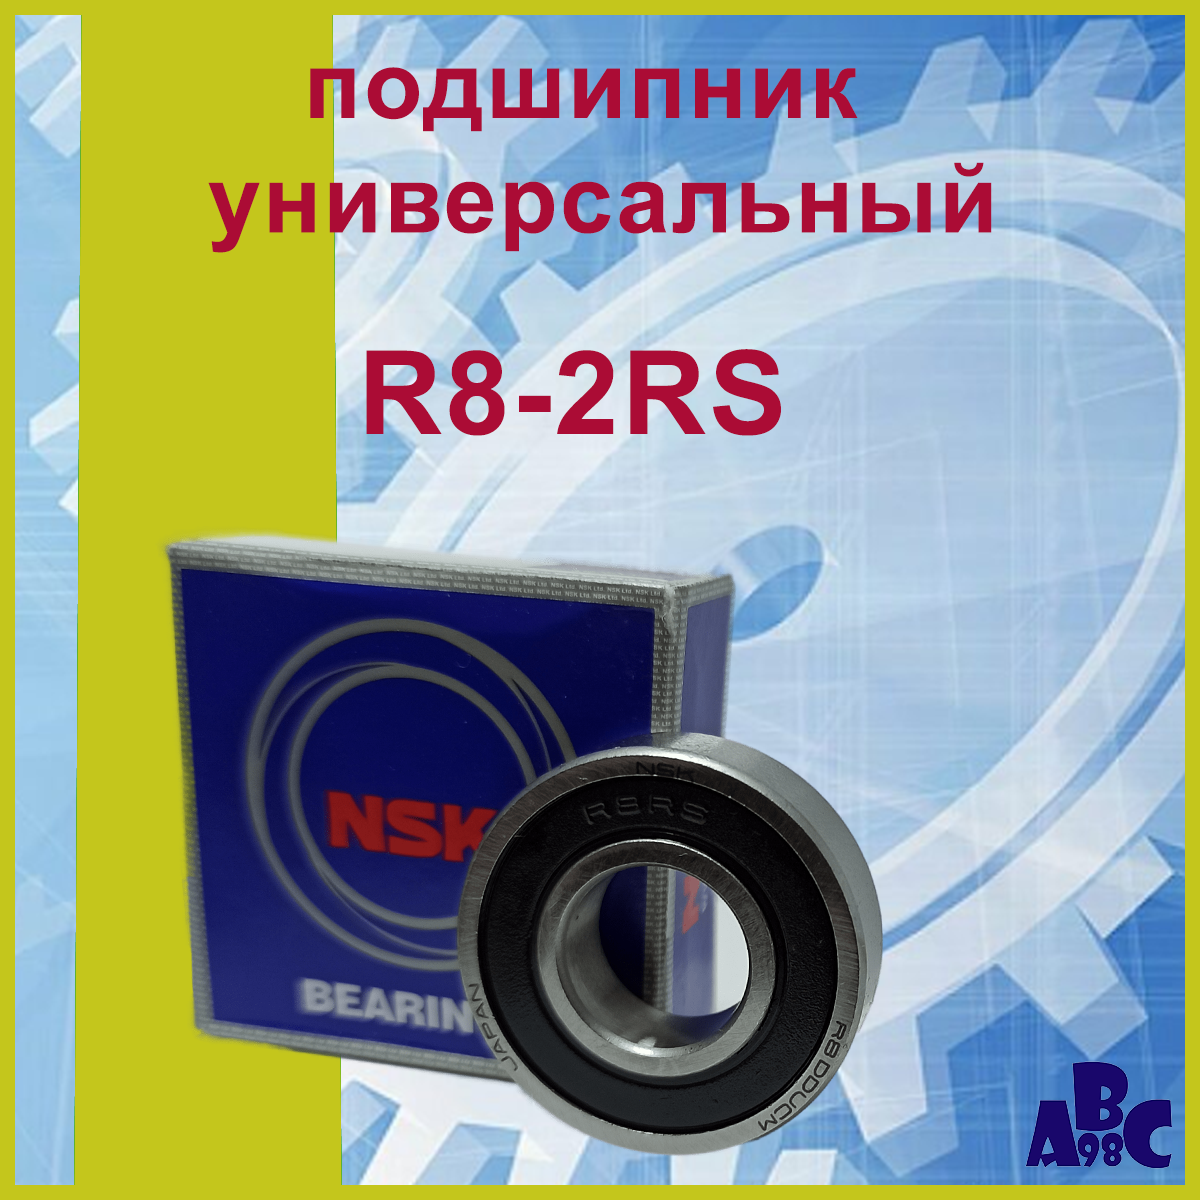 Подшипник R8-2RS (R8-DDUCM NSK) 12,7х28,575х7,938